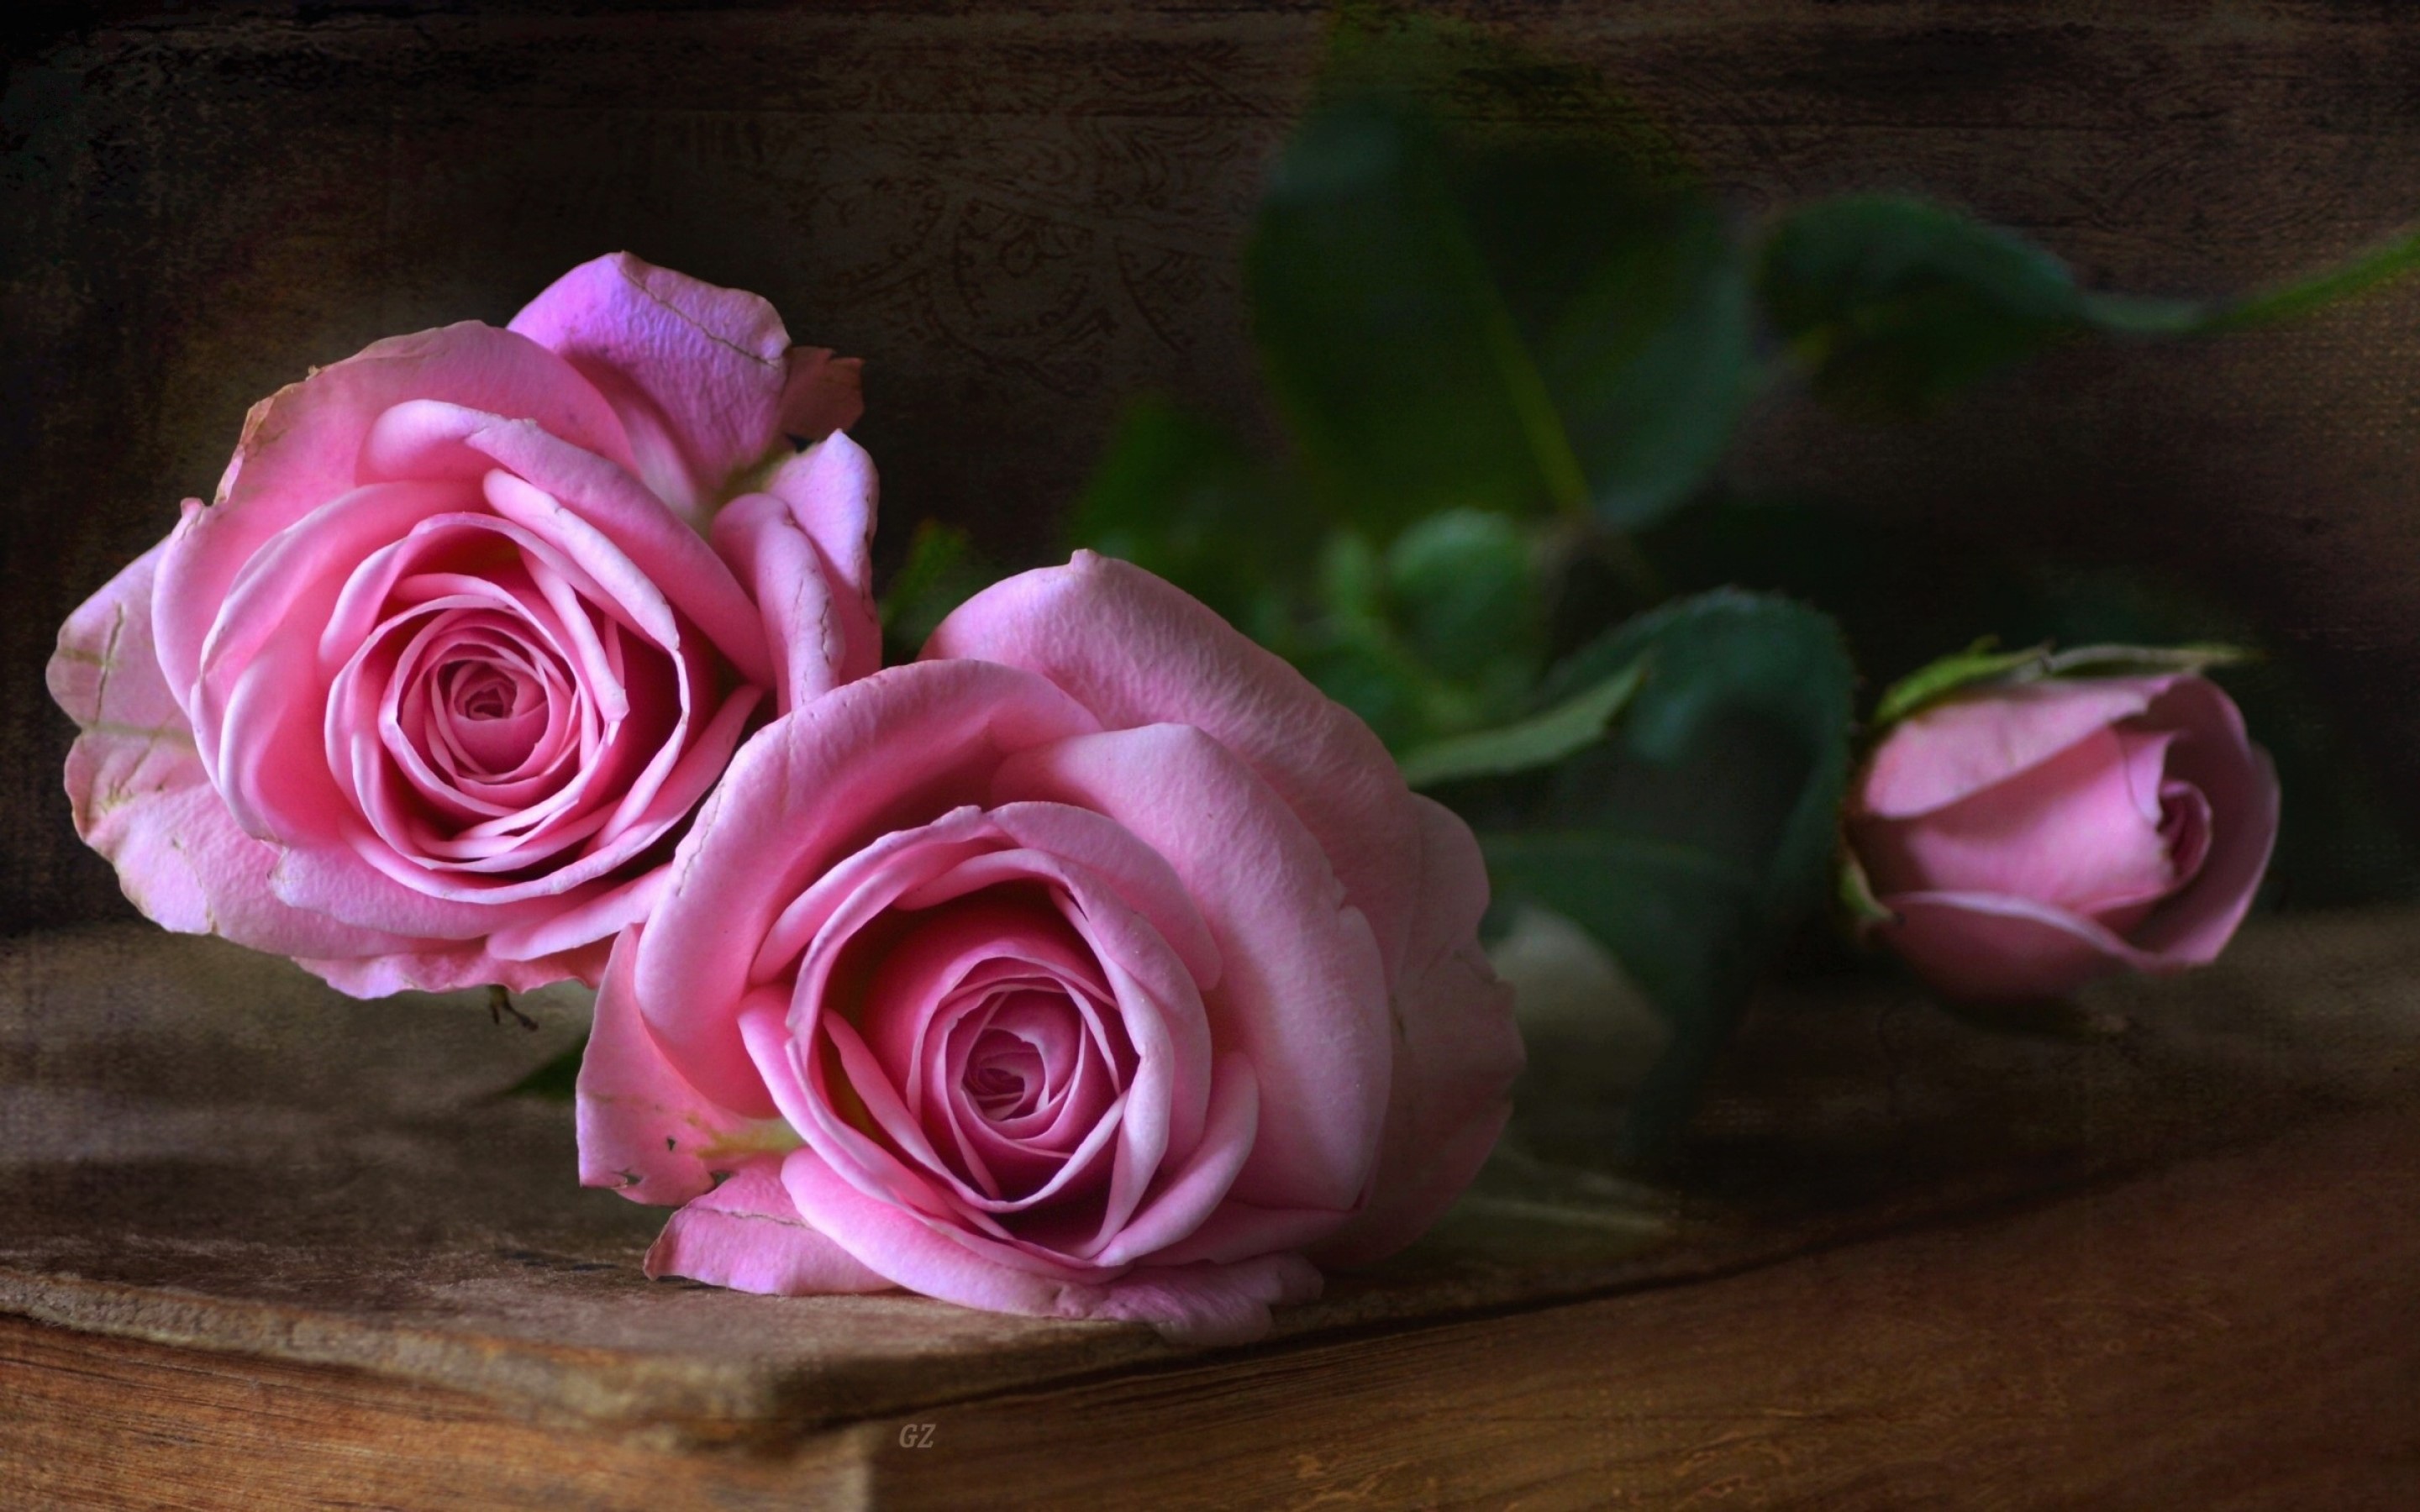 Скачать обои бесплатно Натюрморт, Цветок, Роза, Фотографии, Розовый Цветок, Розовая Роза картинка на рабочий стол ПК